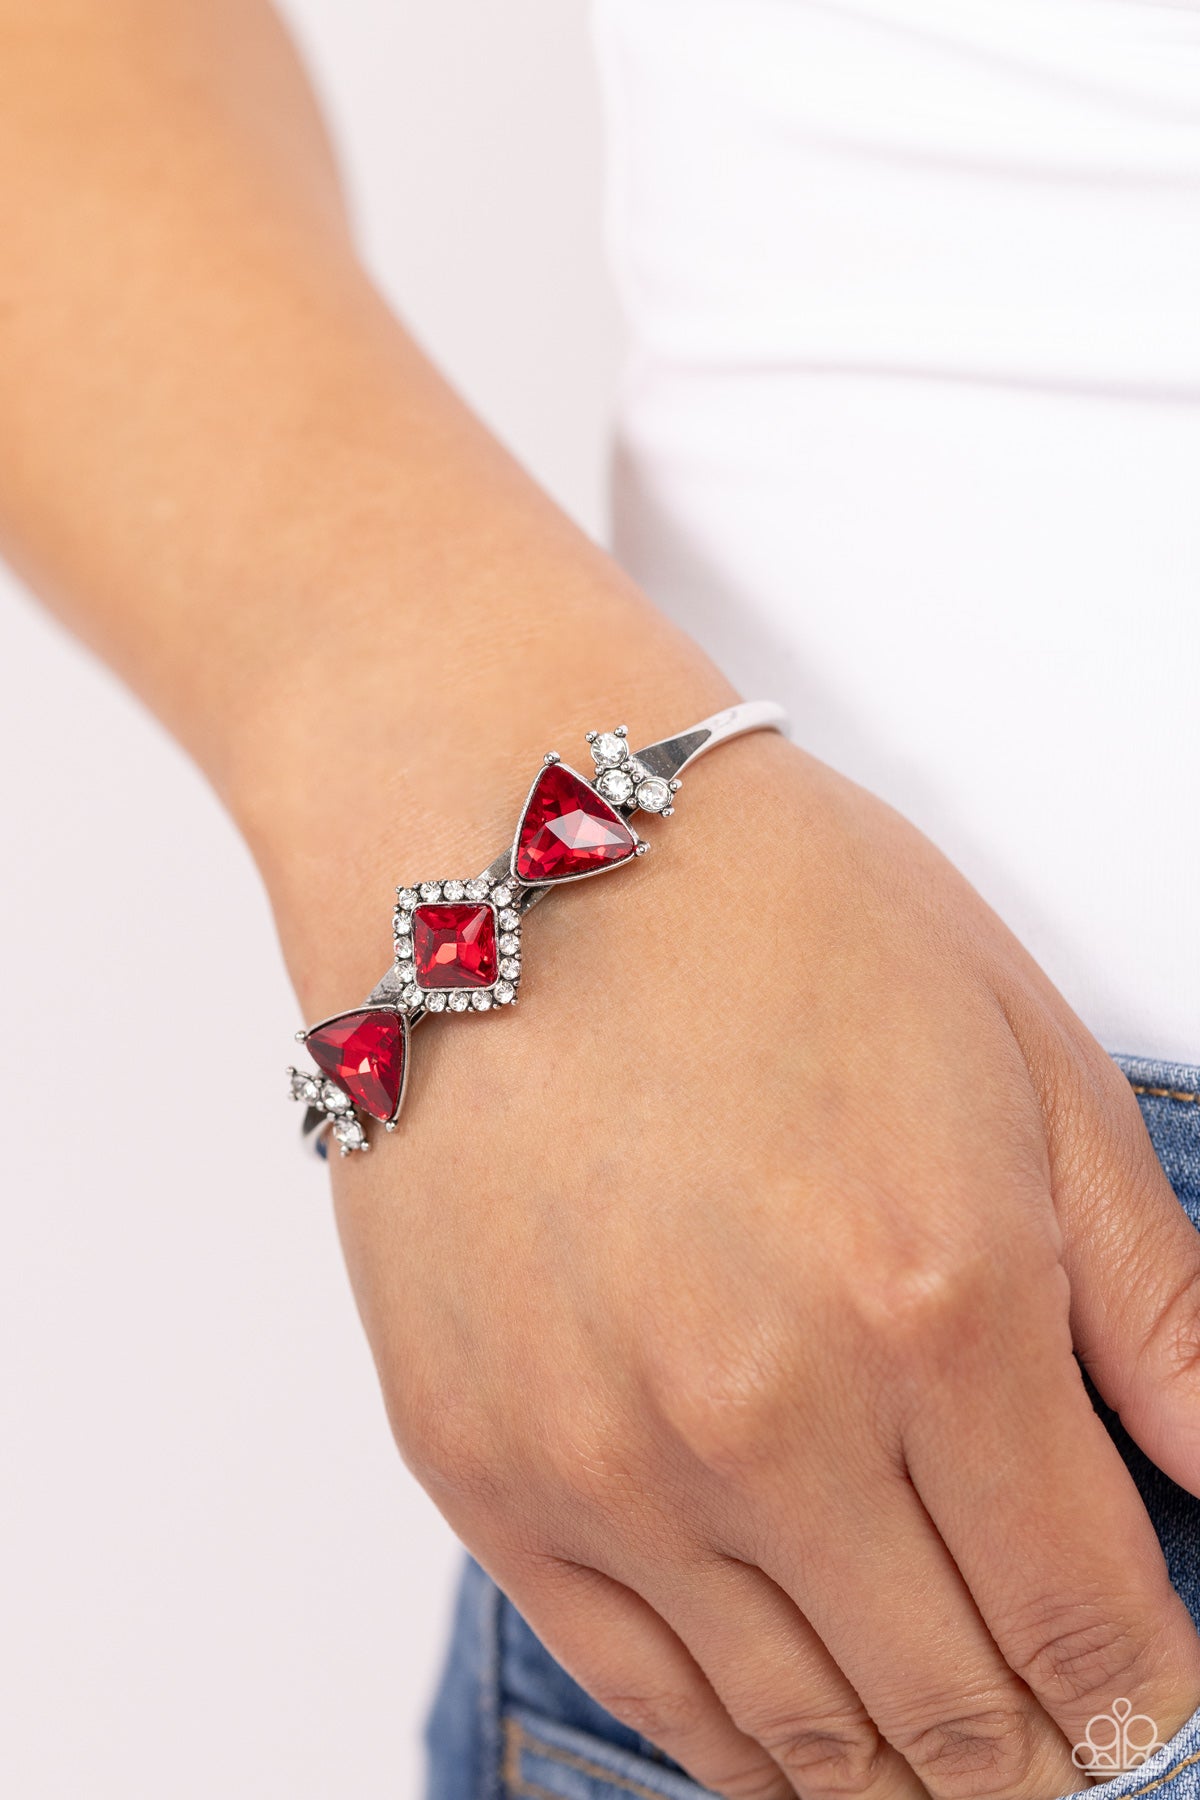 Strategic Sparkle Red Bracelet - Jewelry by Bretta